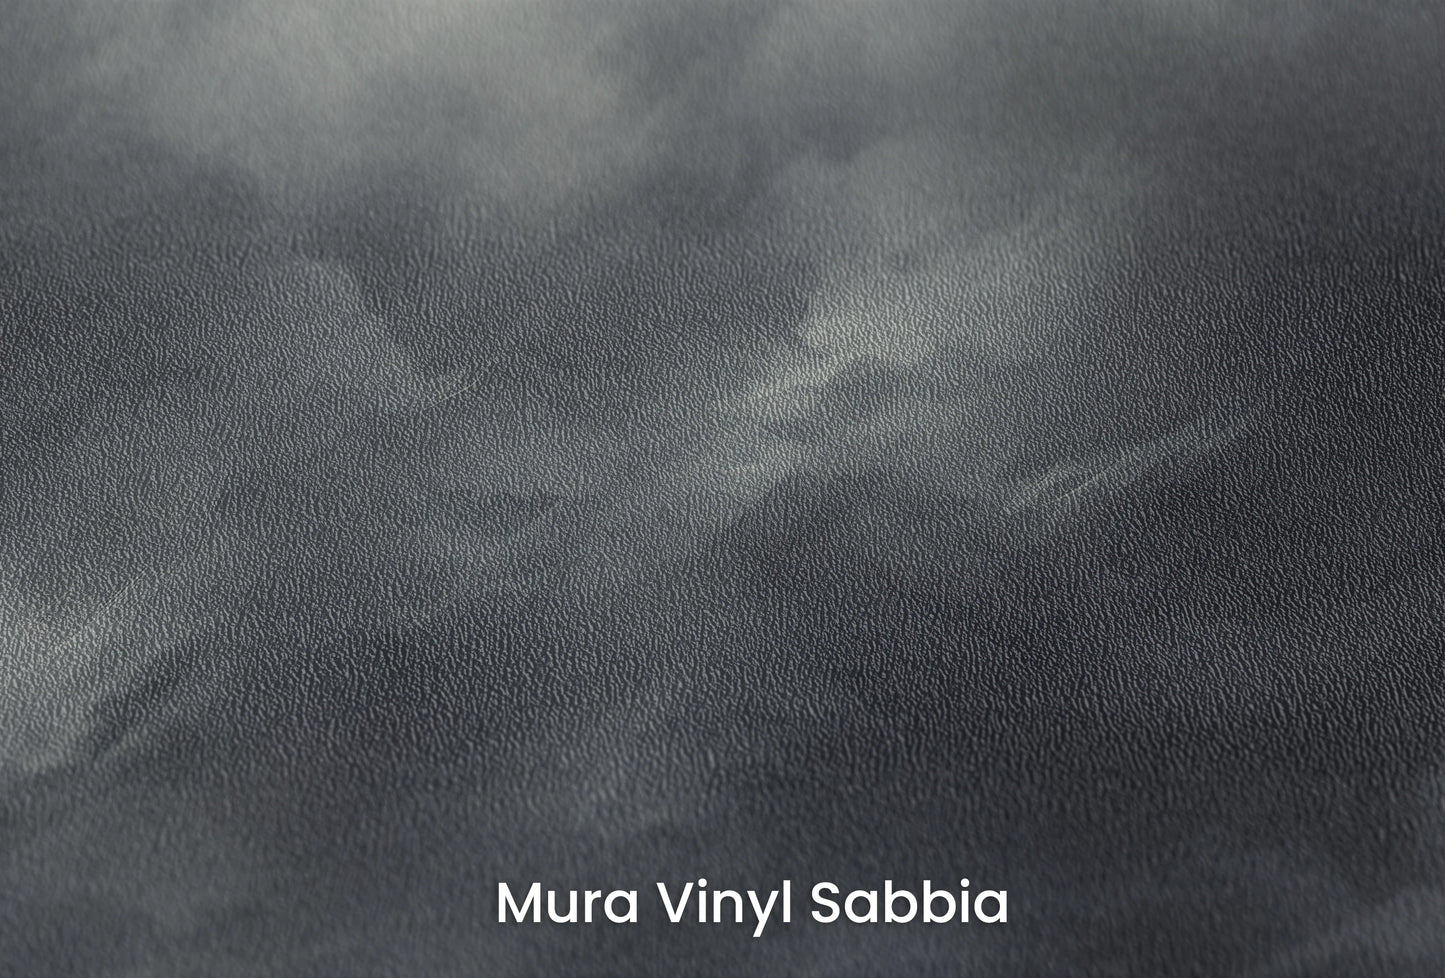 Zbliżenie na artystyczną fototapetę o nazwie Serene Monochrome na podłożu Mura Vinyl Sabbia struktura grubego ziarna piasku.